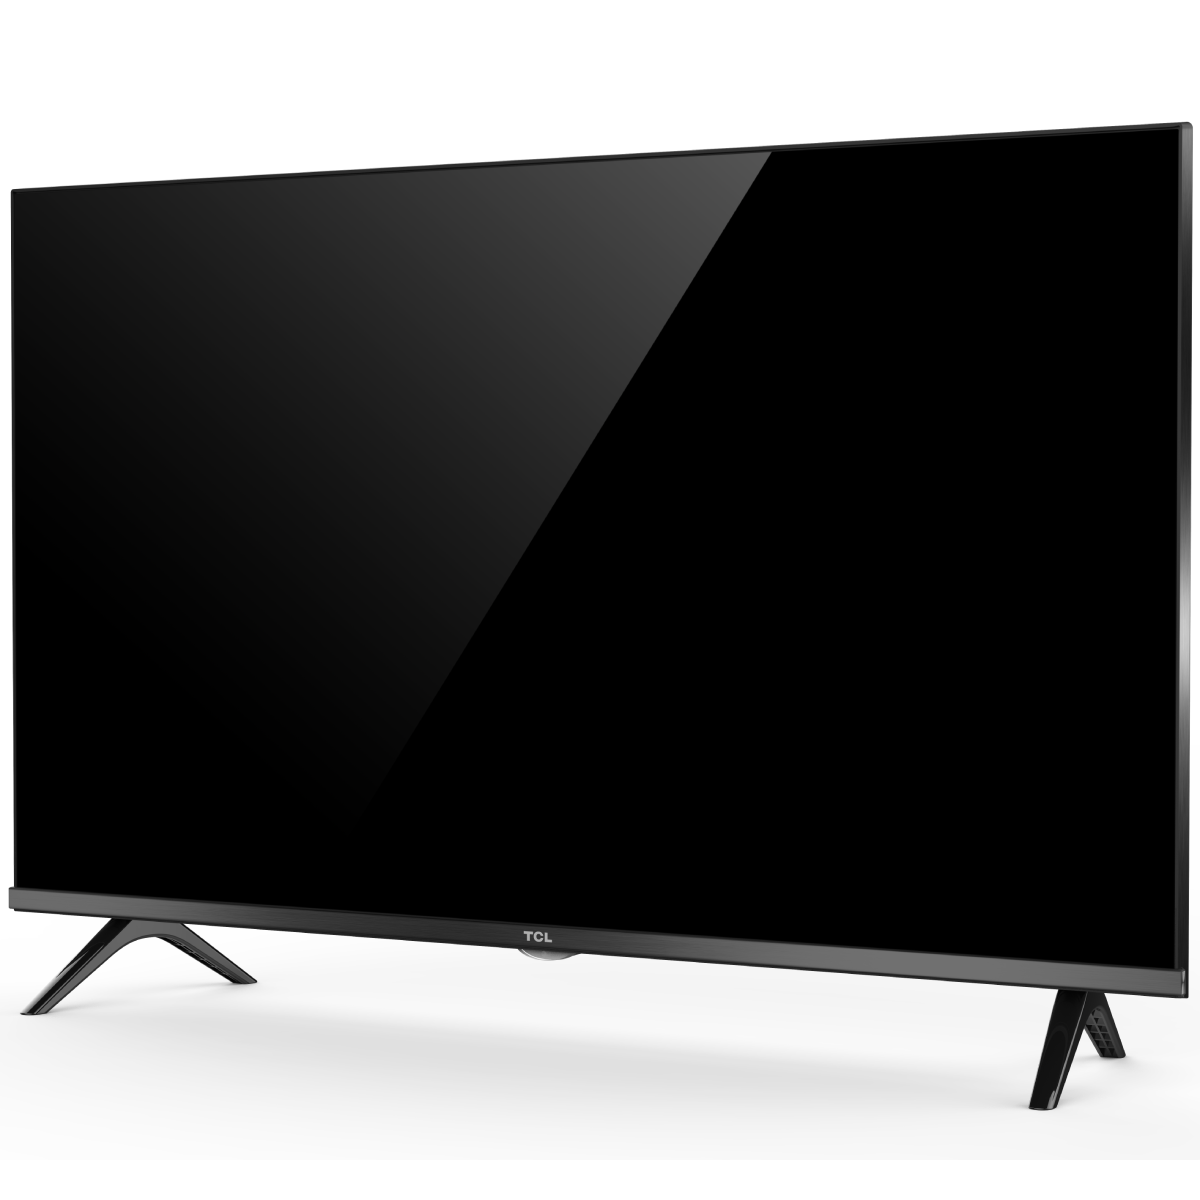 Телевизоры высотой 40 см. Телевизор TCL l40s60a. ЖК телевизор TCL 40" (l40s60a). Телевизор TCL l32s60a черный. Телевизор TCL 40s65a (40s65a).